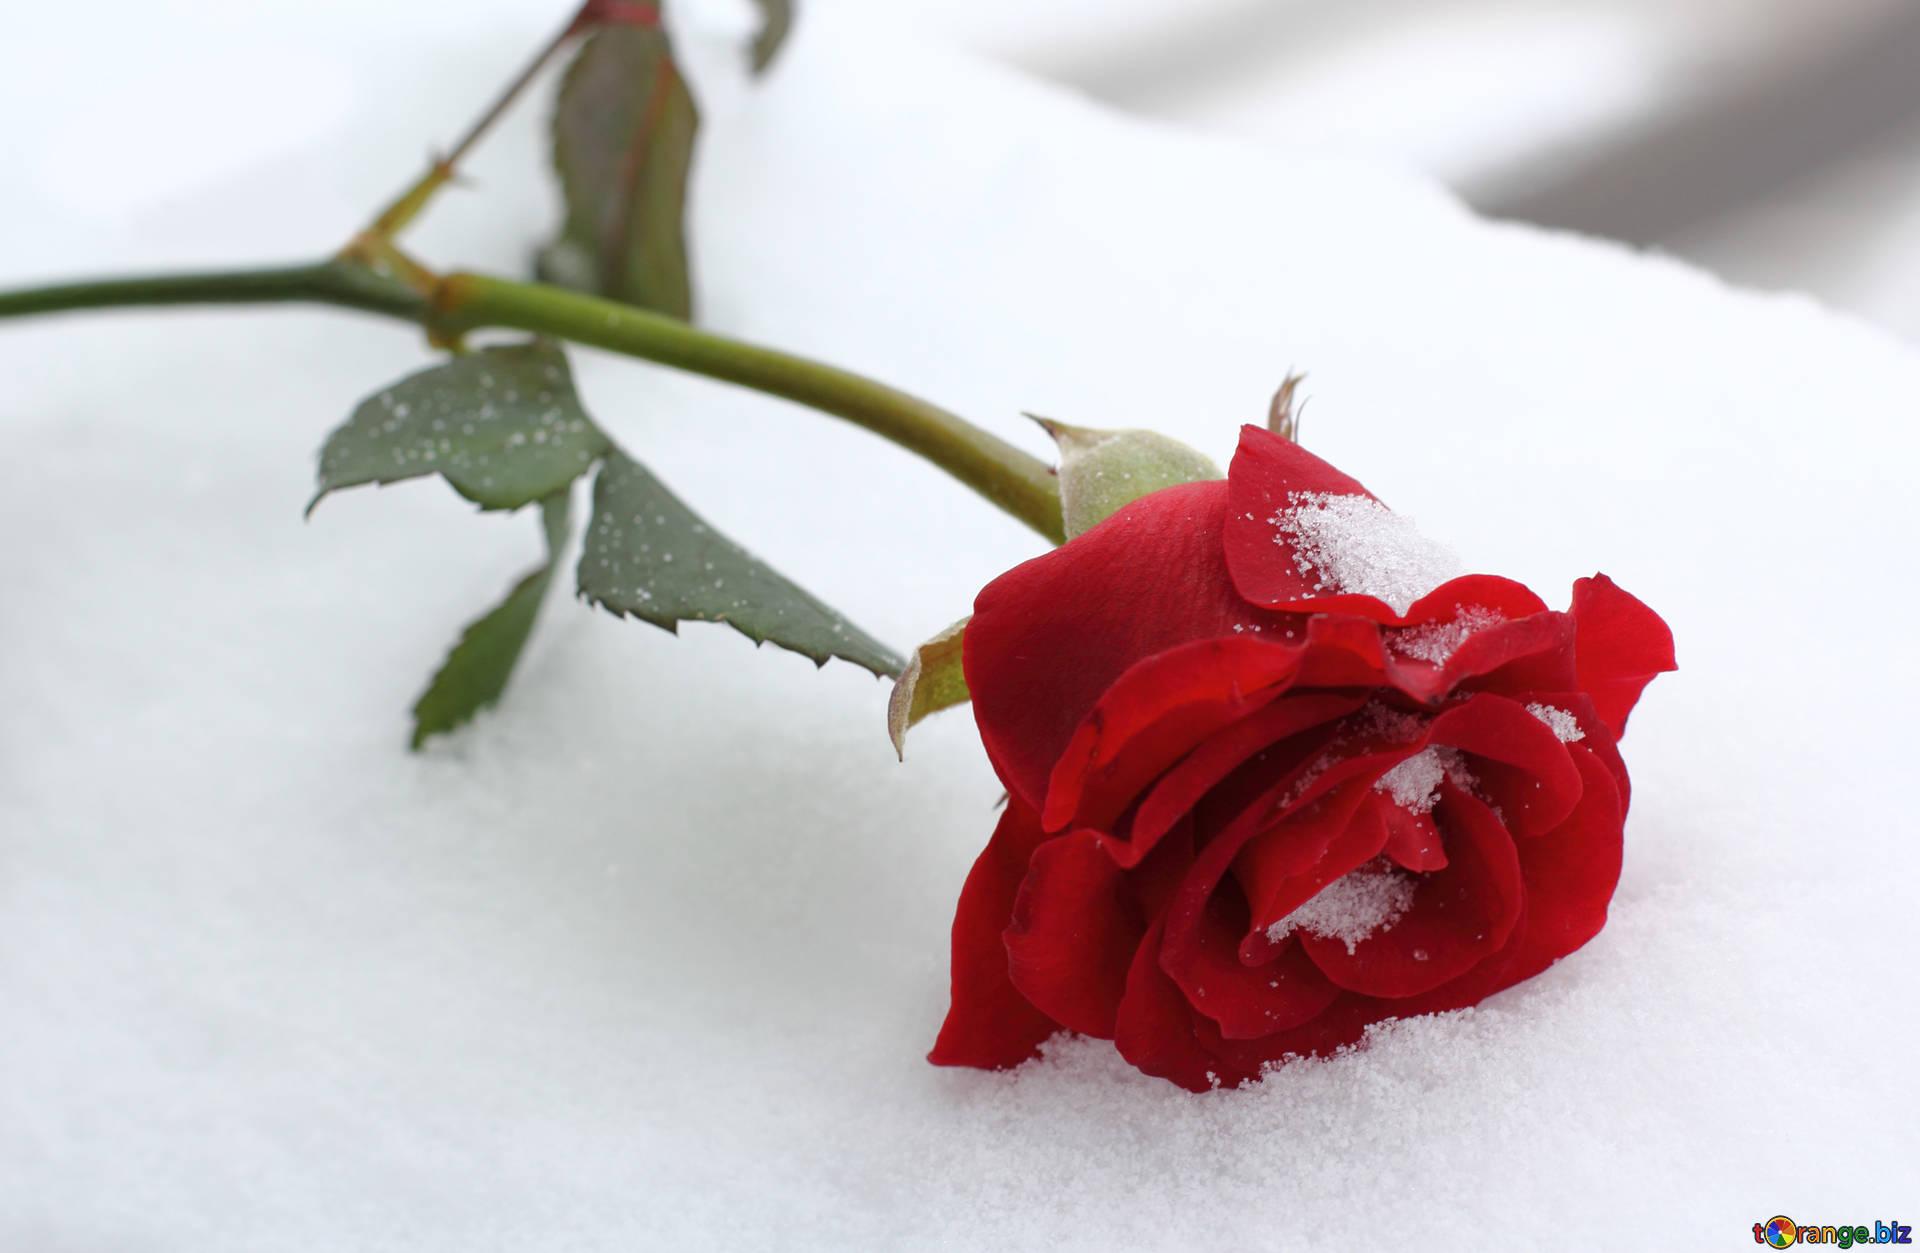 Winter rose winter rose rose flower № 16970